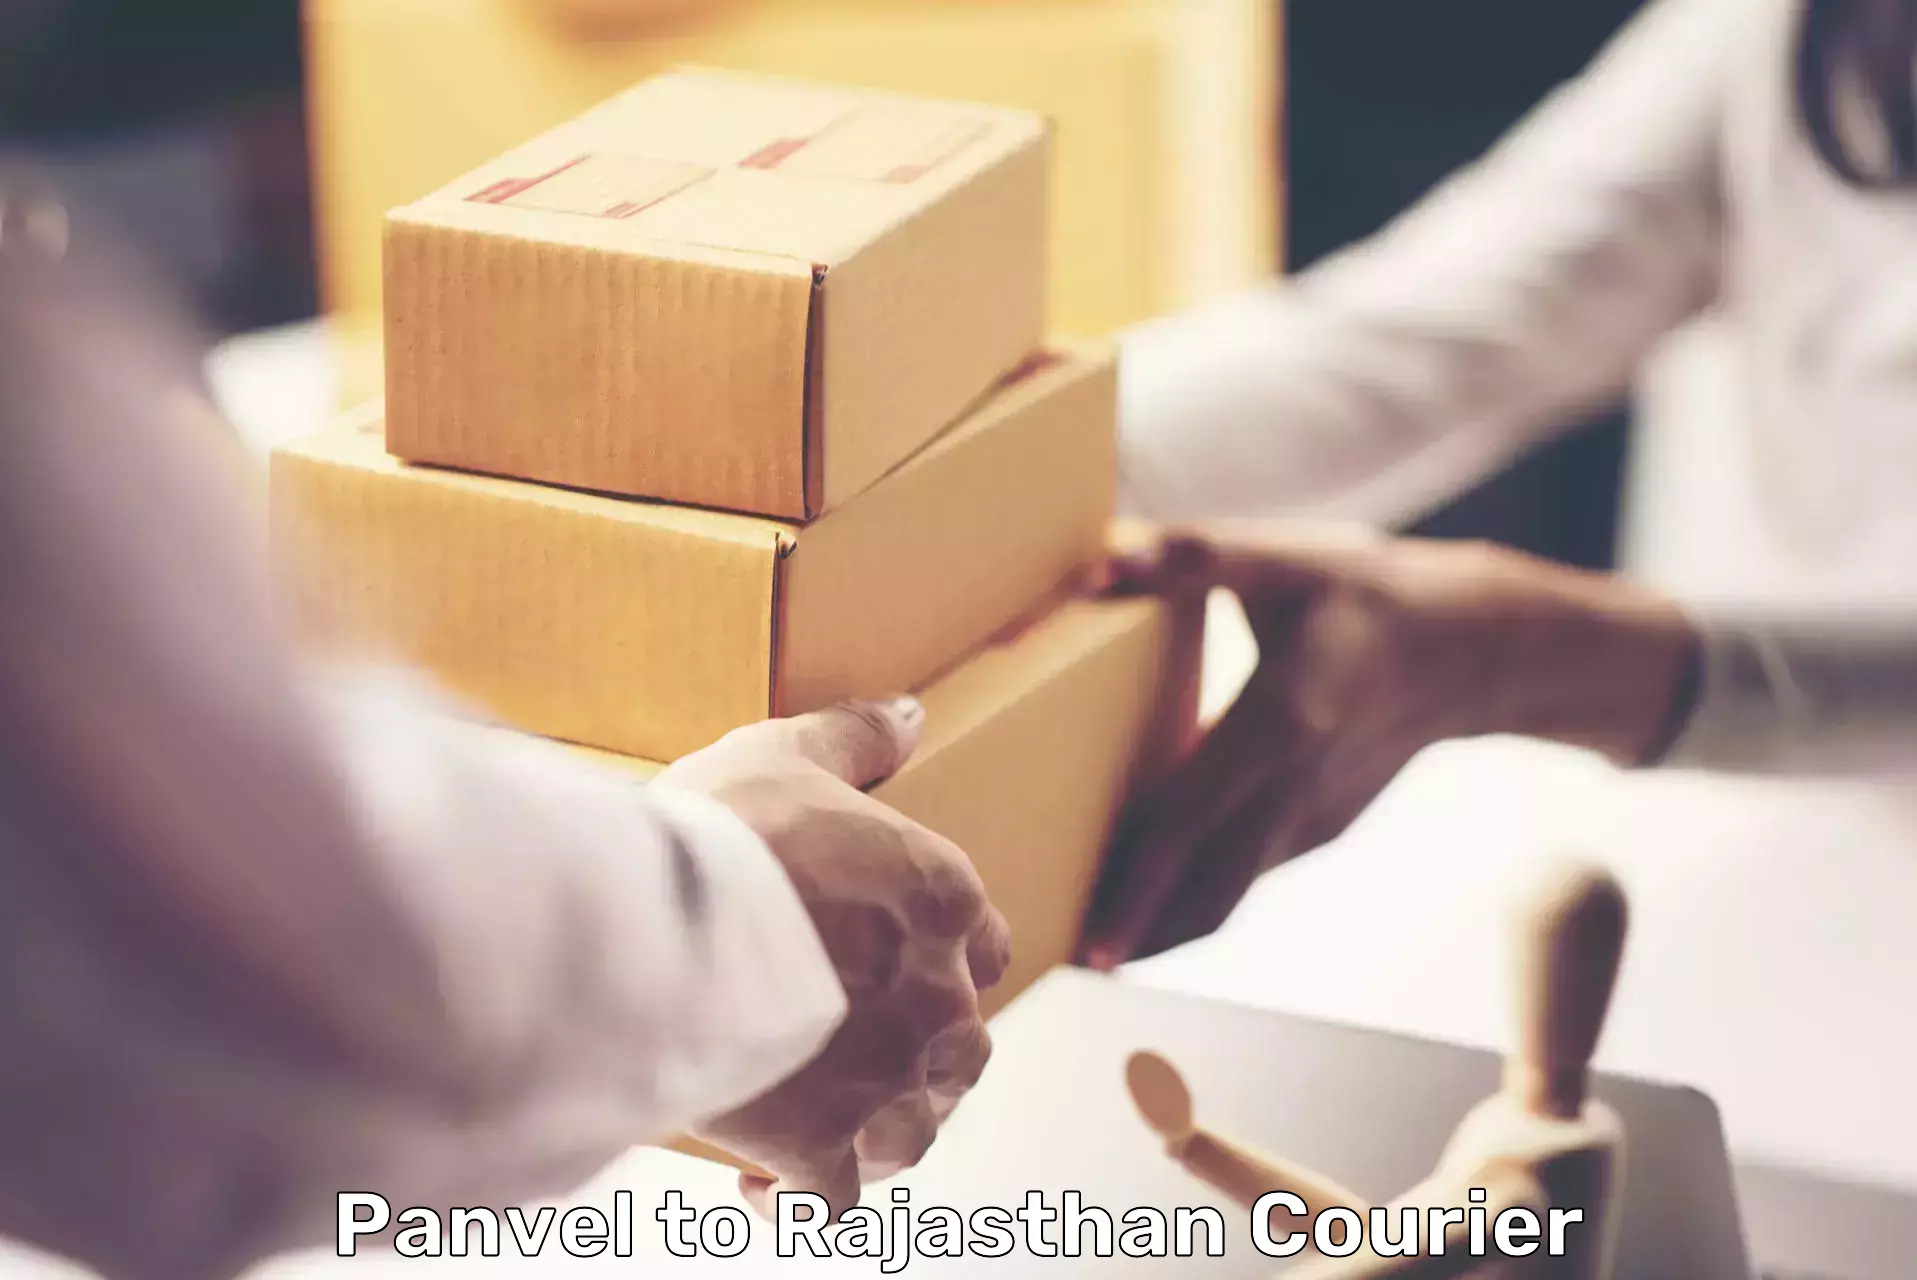 Affordable parcel service Panvel to Jhalawar